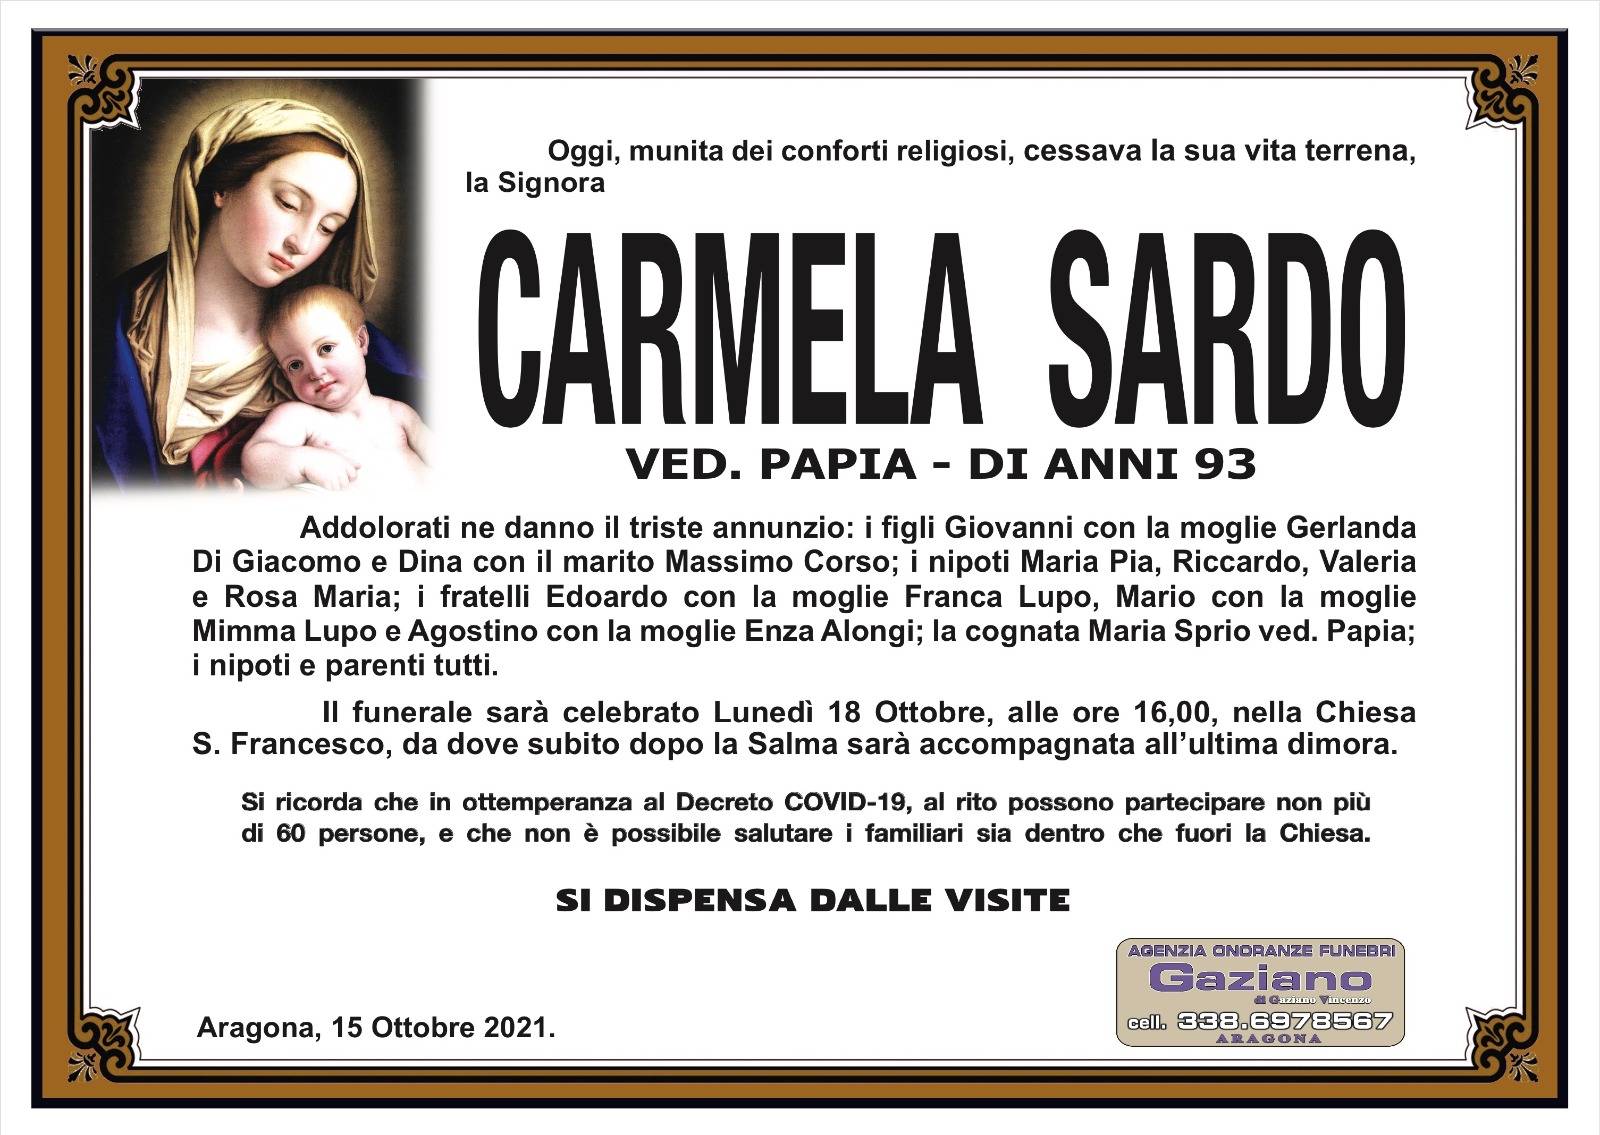 Carmela Sardo